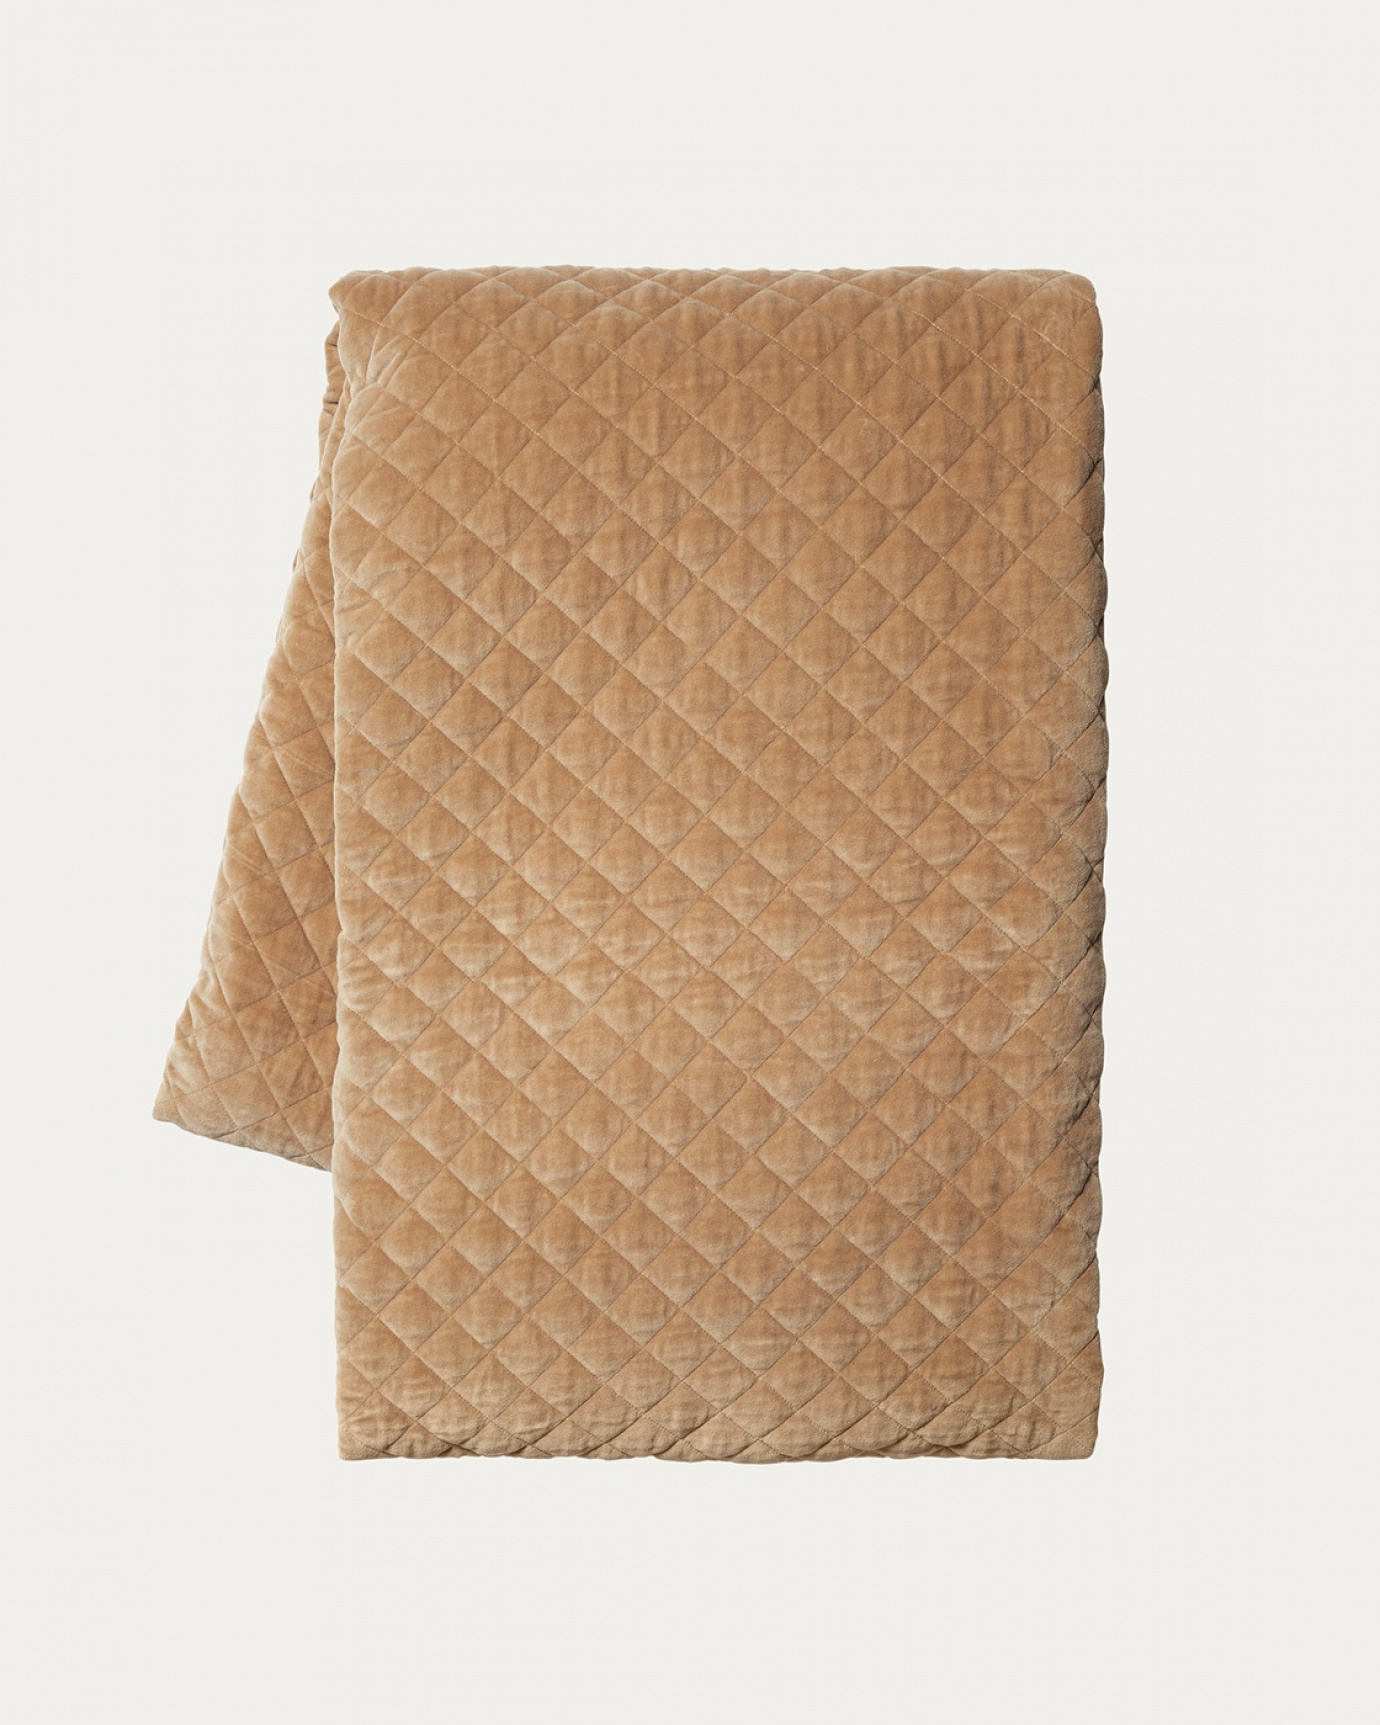 Produktbild kamelbraun Tagesdecke PICCOLO aus weichem Samt aus bio-baumwolle für Einzelbett von LINUM DESIGN. Größe 170x260 cm.